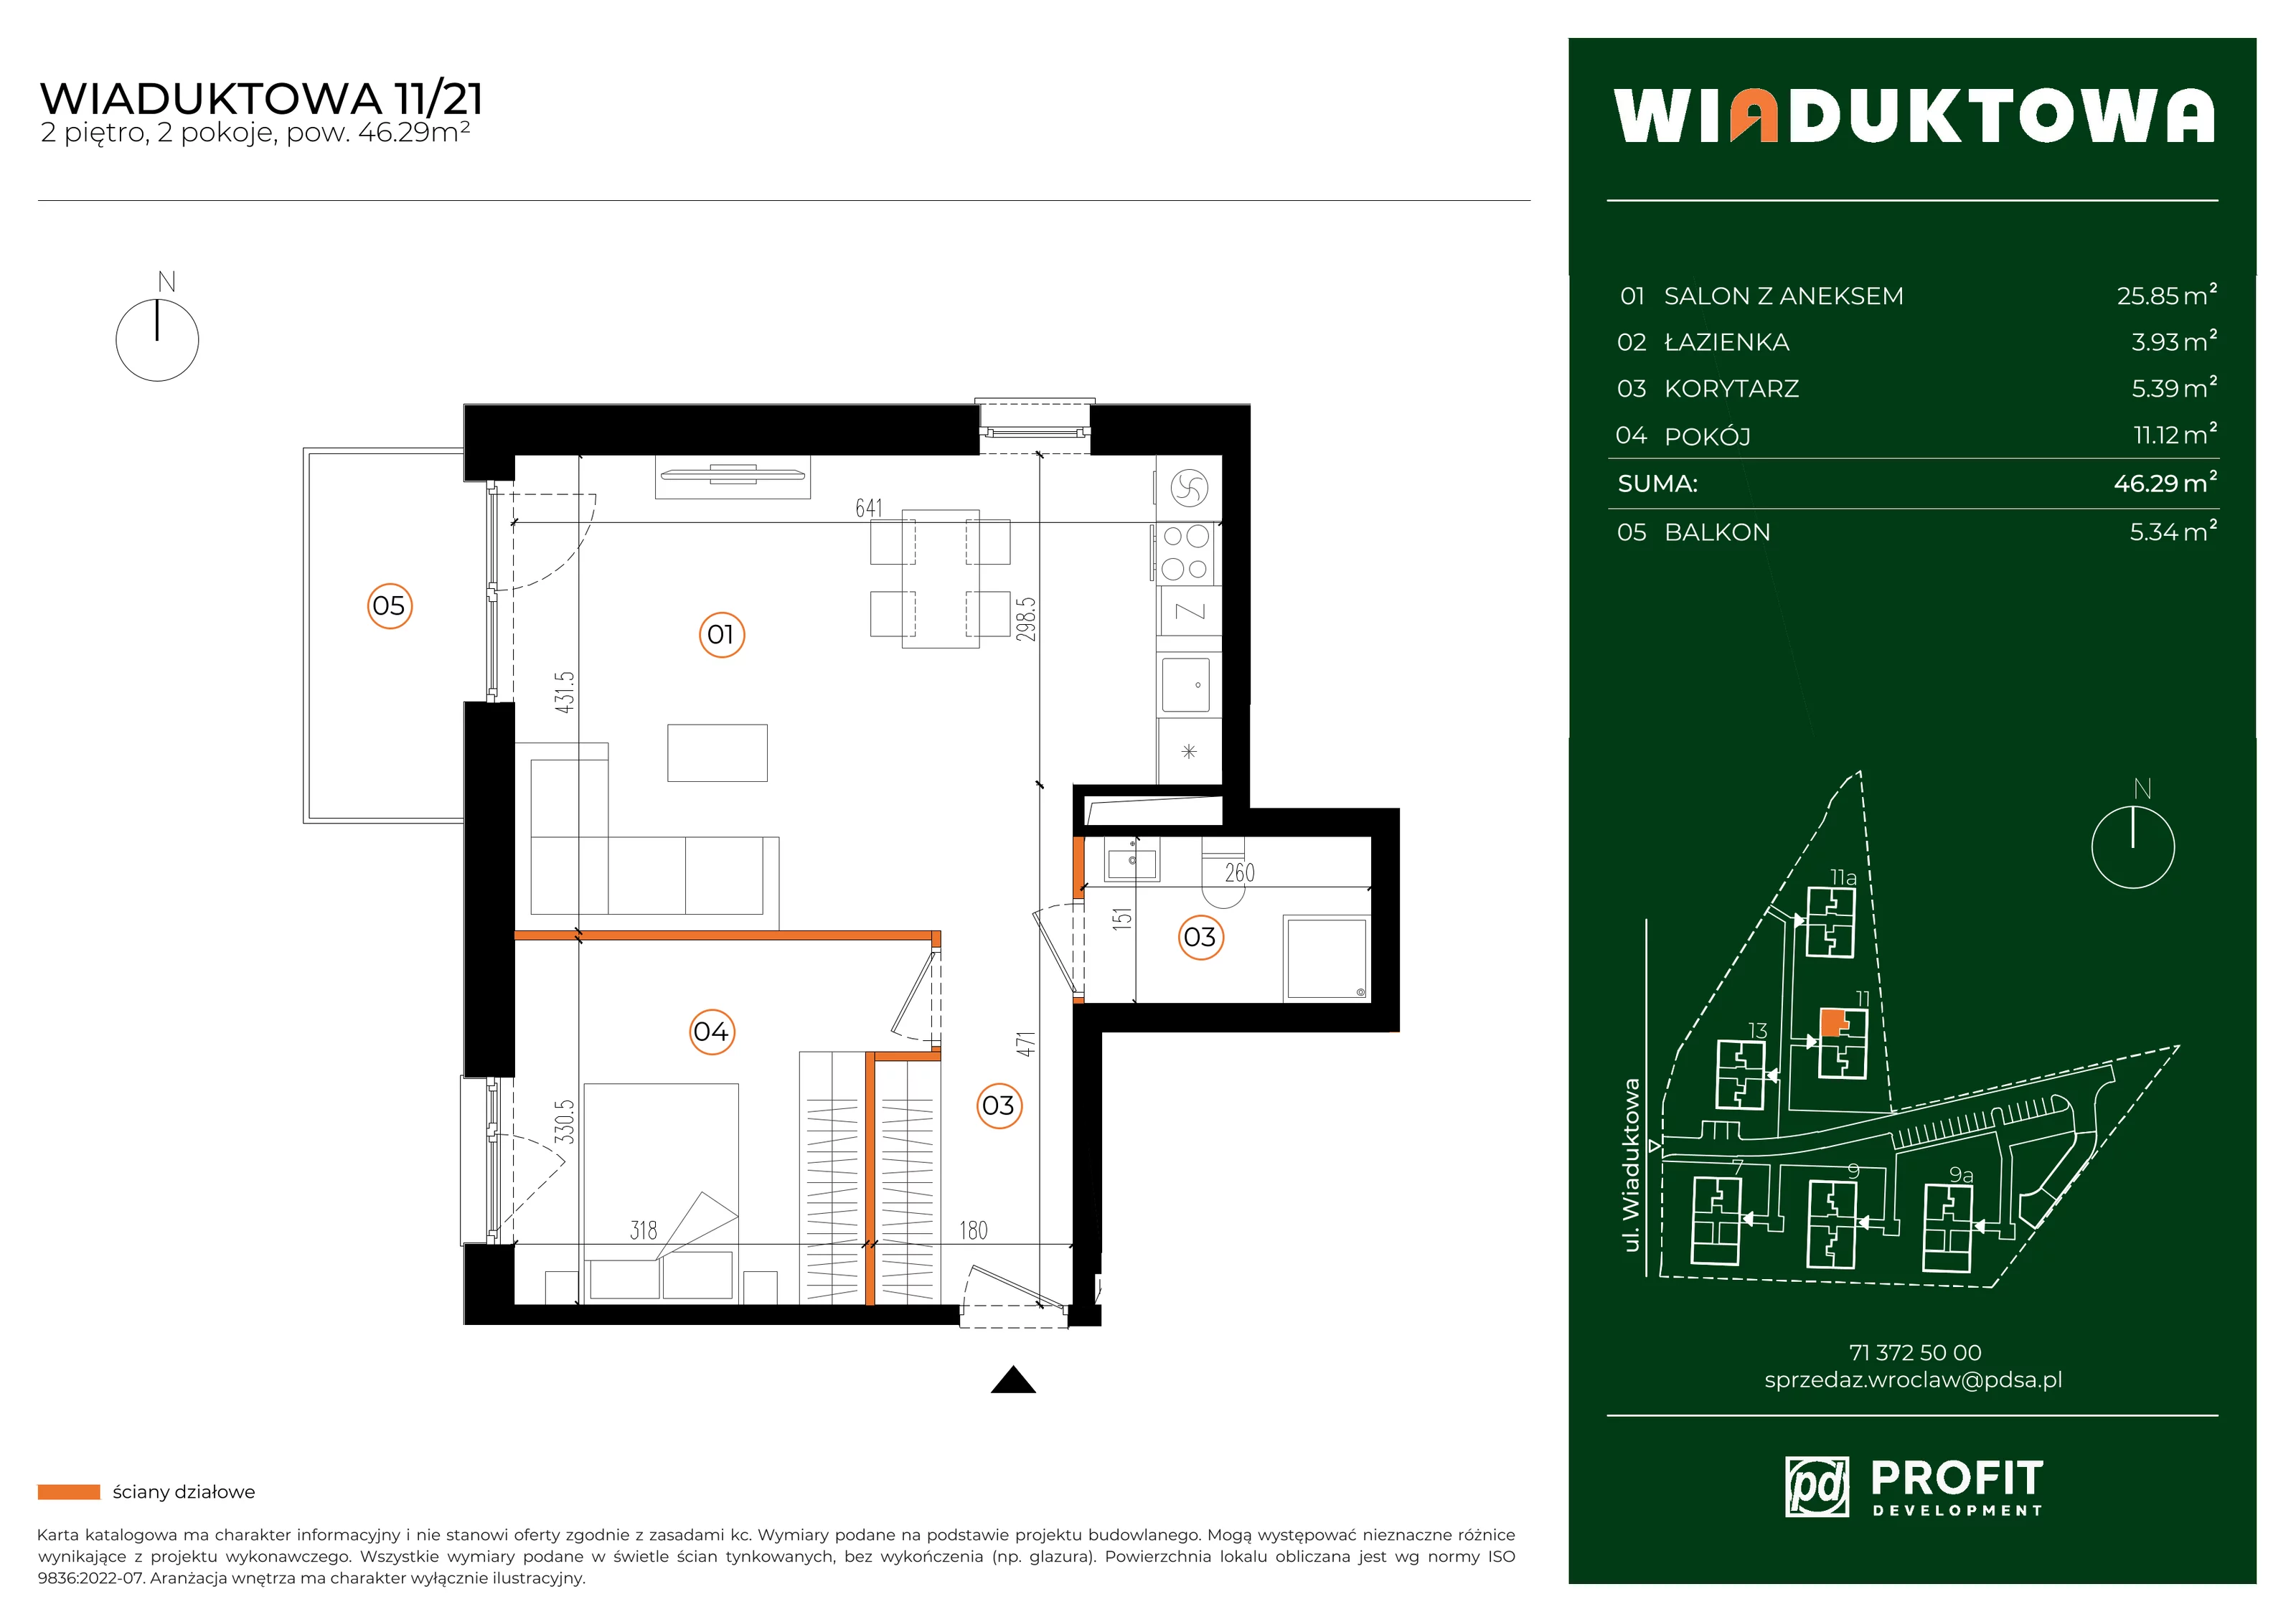 Mieszkanie 46,29 m², piętro 2, oferta nr WI/11/21, Wiaduktowa, Wrocław, Krzyki-Partynice, Krzyki, ul. Wiaduktowa